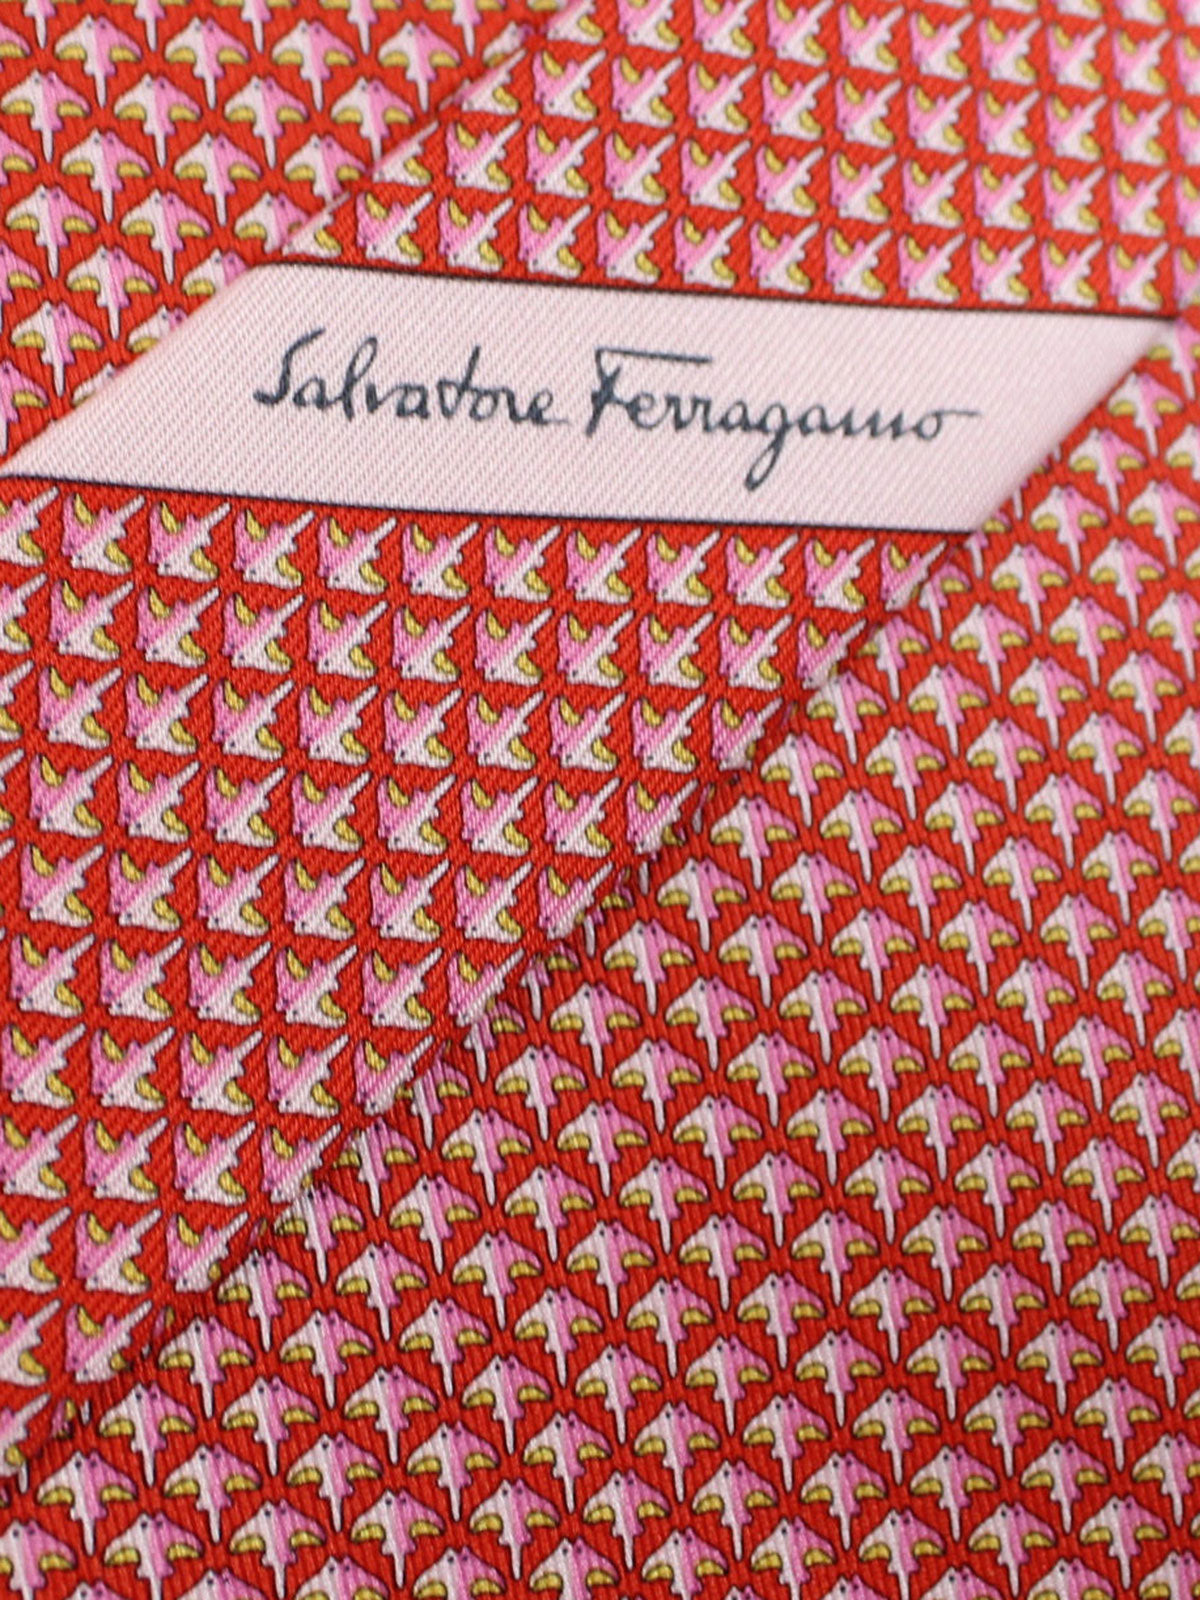 Salvatore Ferragamo Tie Red Pink Stingray Design Novelty